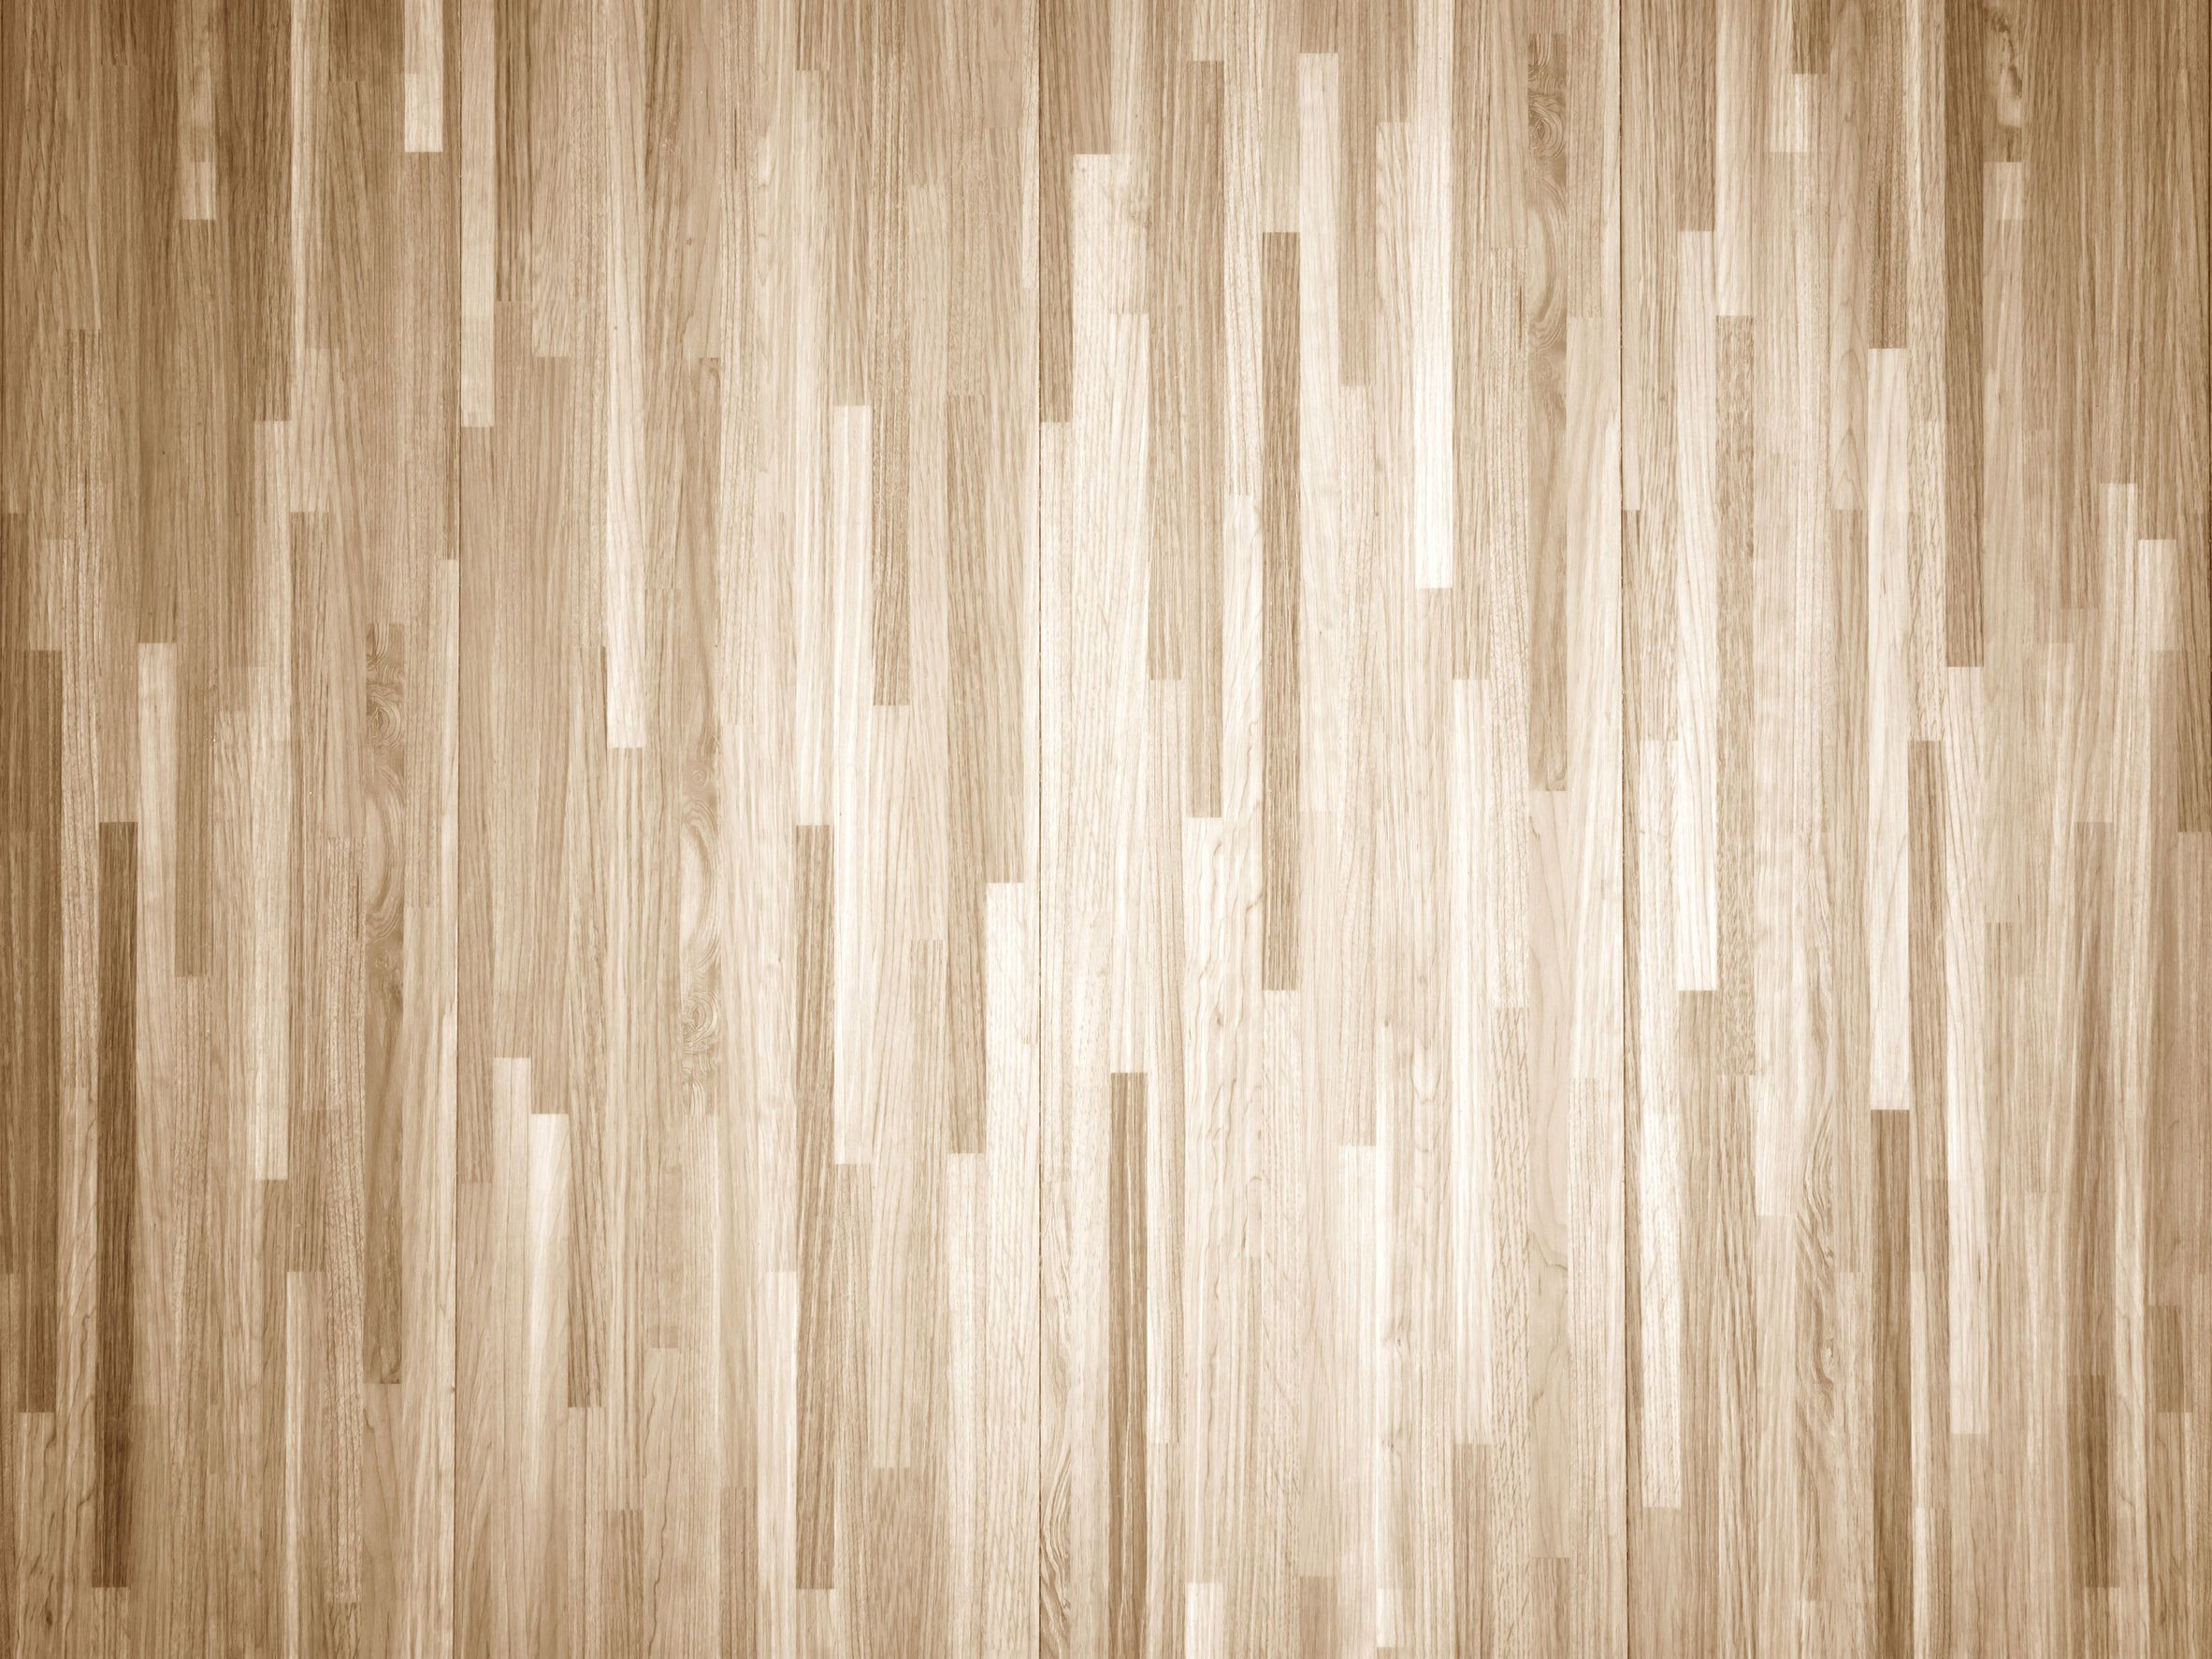 26 Fabulous Hardwood Floor top Of Stairs 2024 free download hardwood floor top of stairs of how to chemically strip wood floors woodfloordoctor com within you